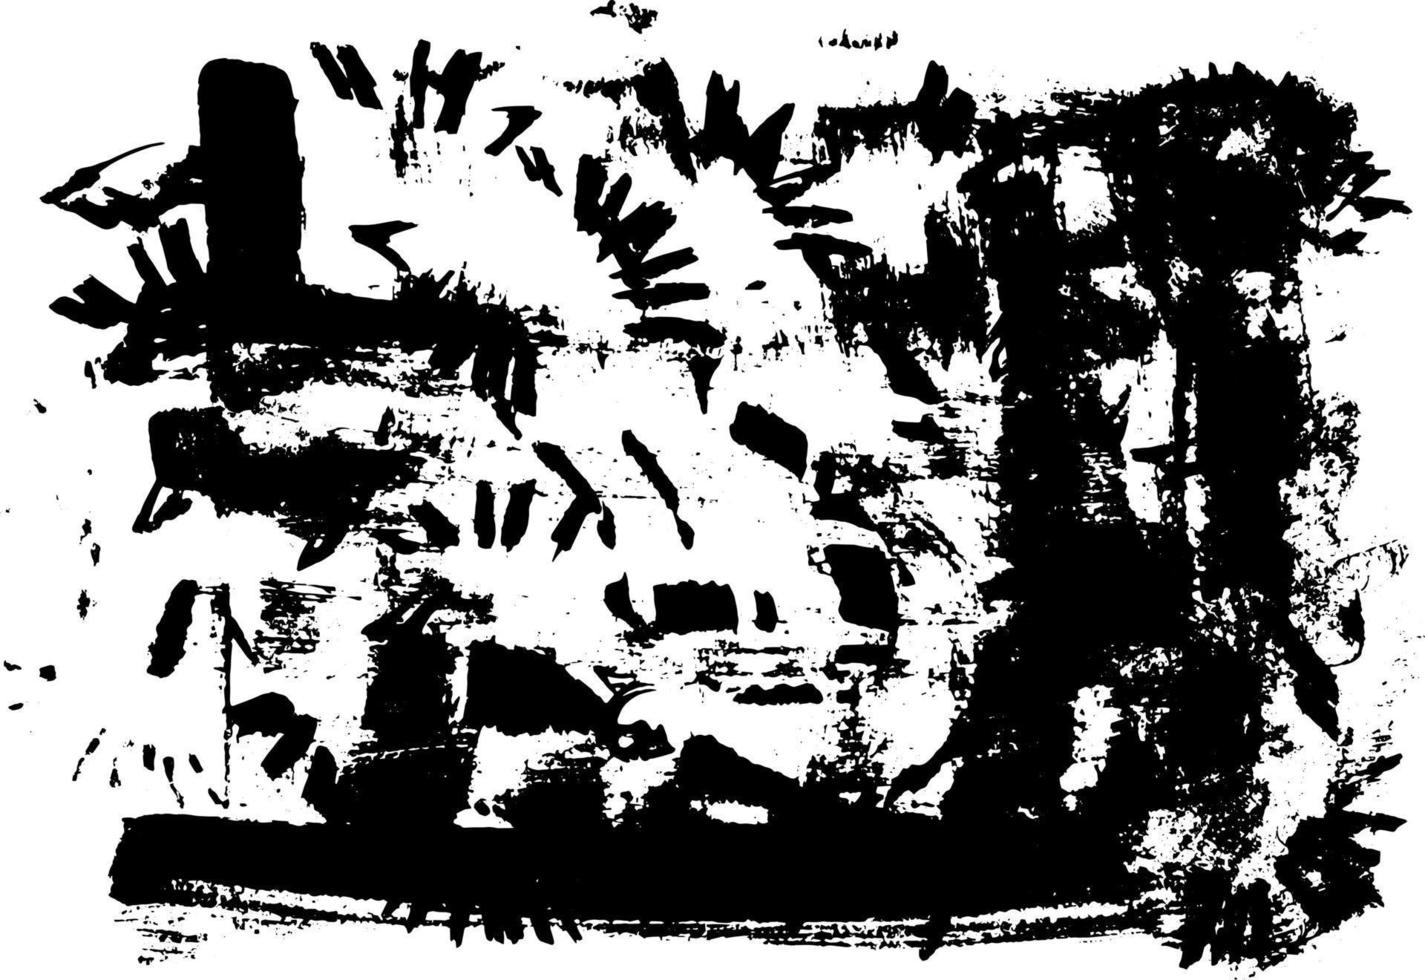 modelo de textura urbana preto e branco do grunge. poeira suja escura sobreposição de fundo de aflição. crie facilmente um efeito abstrato pontilhado, arranhado e vintage com ruído e granulação vetor